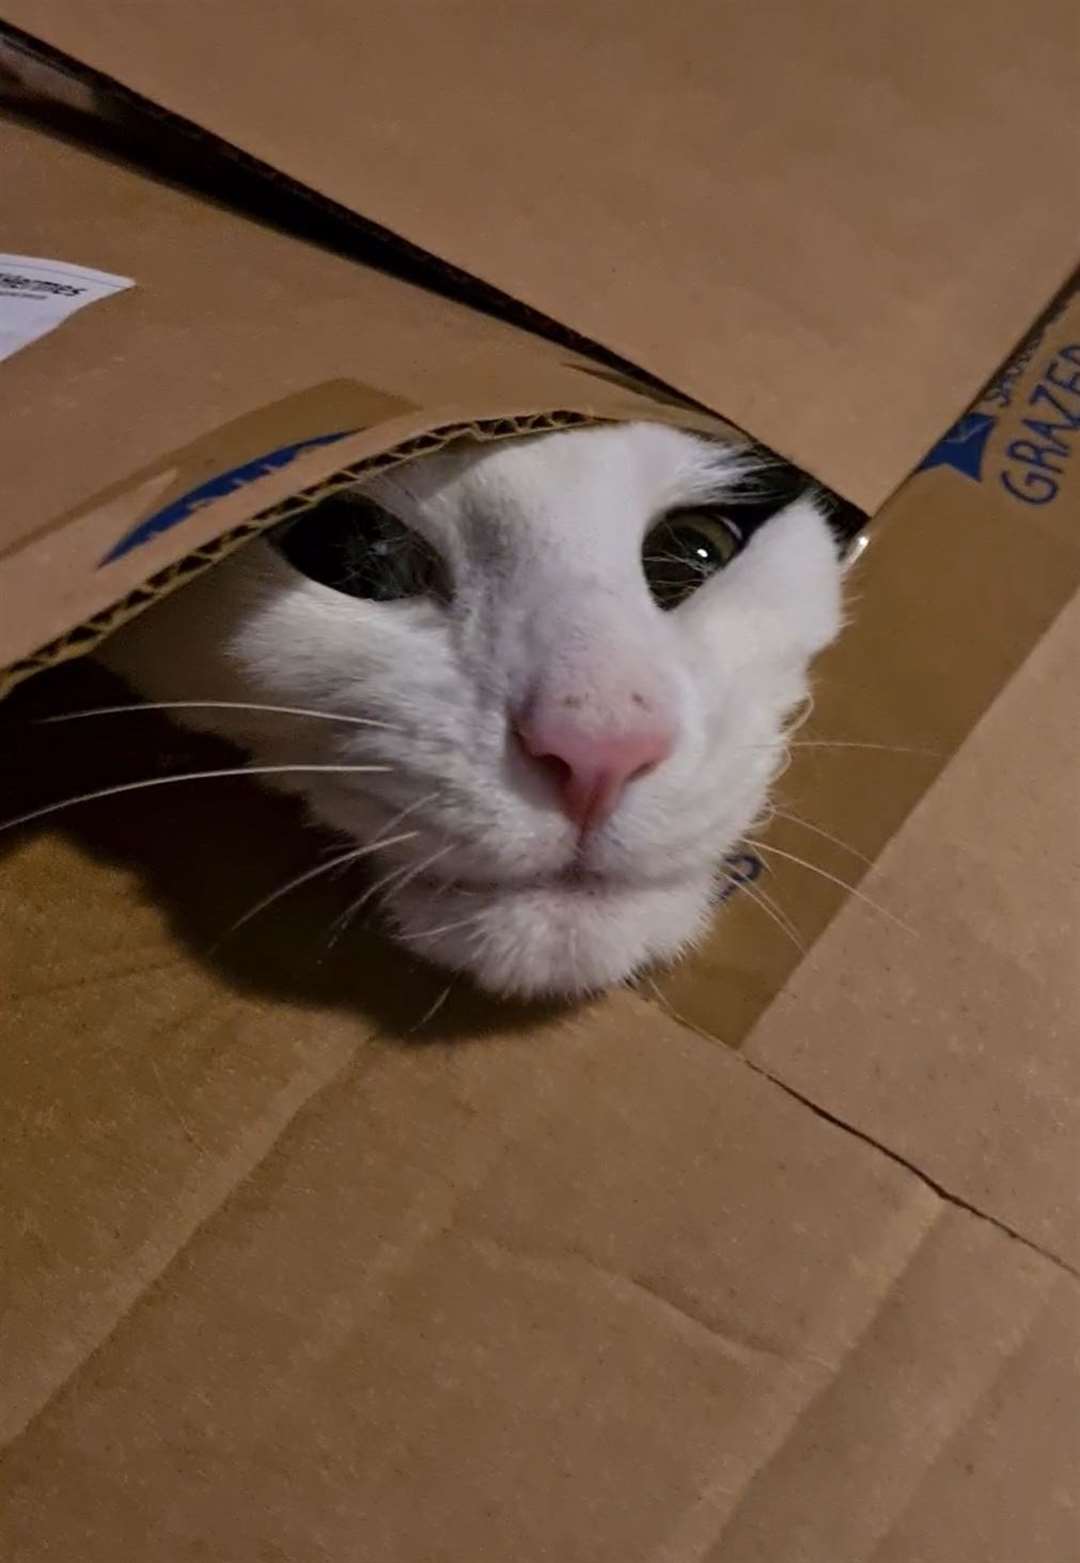 Irwin peeking out of a box